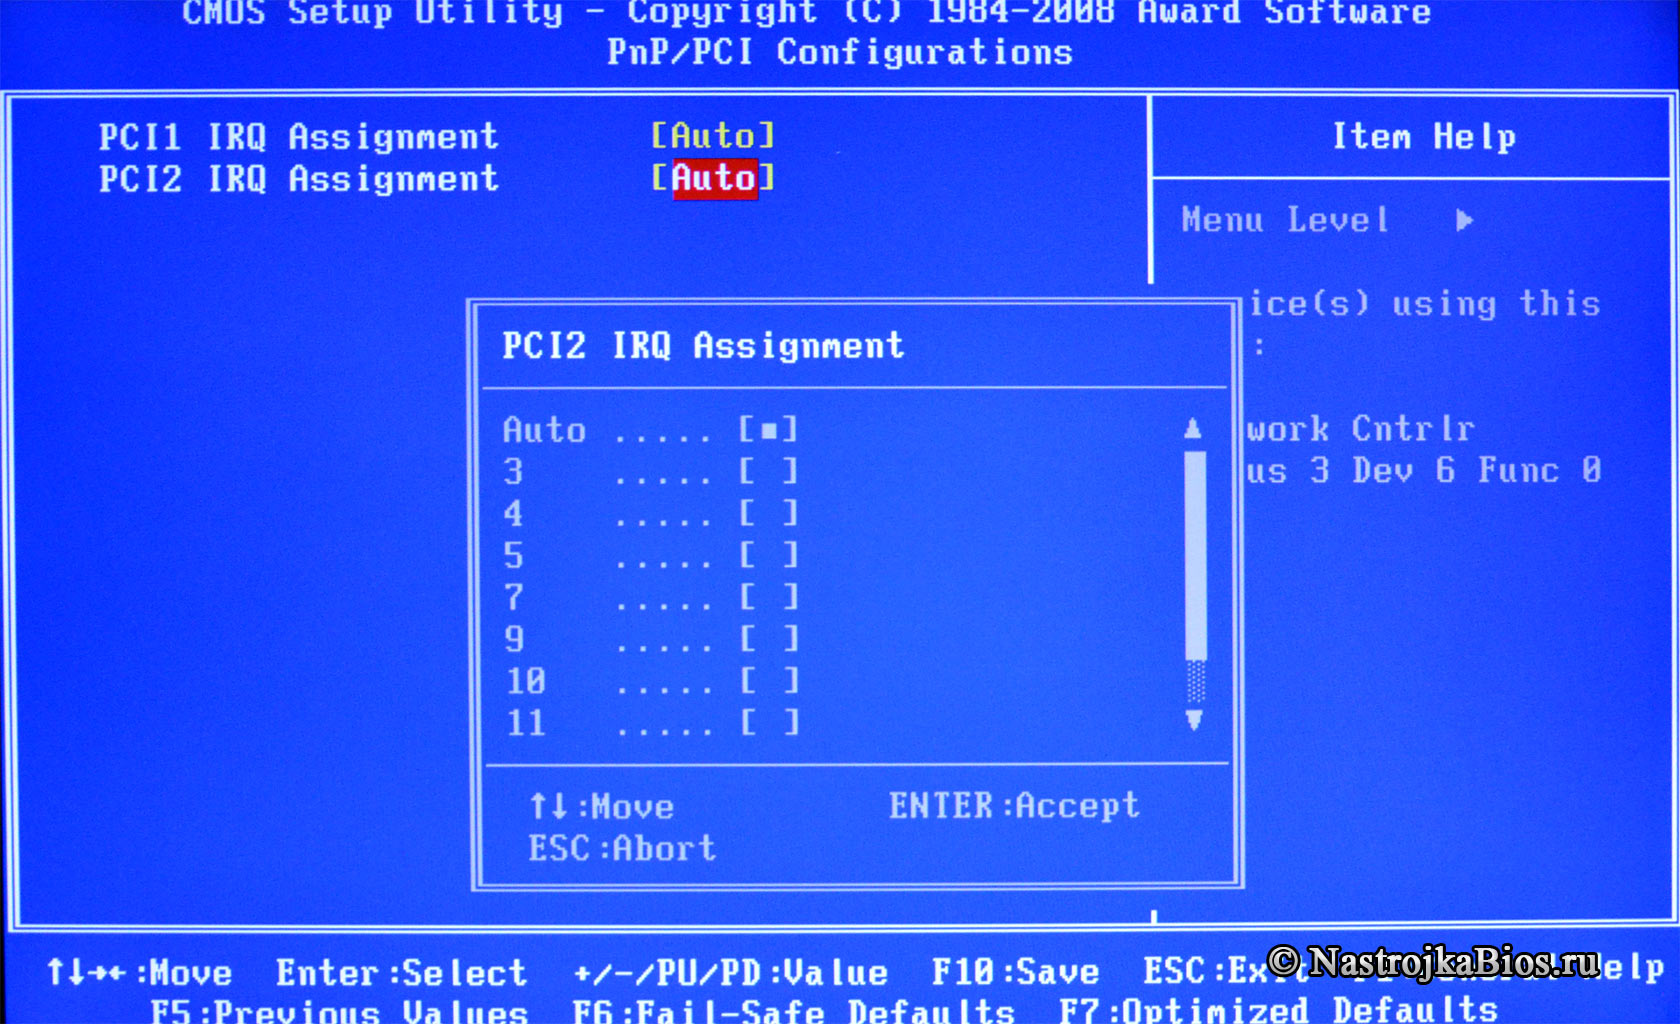 PCI 2 Assignment - назначение прерывания устройству установленого в PCI №1